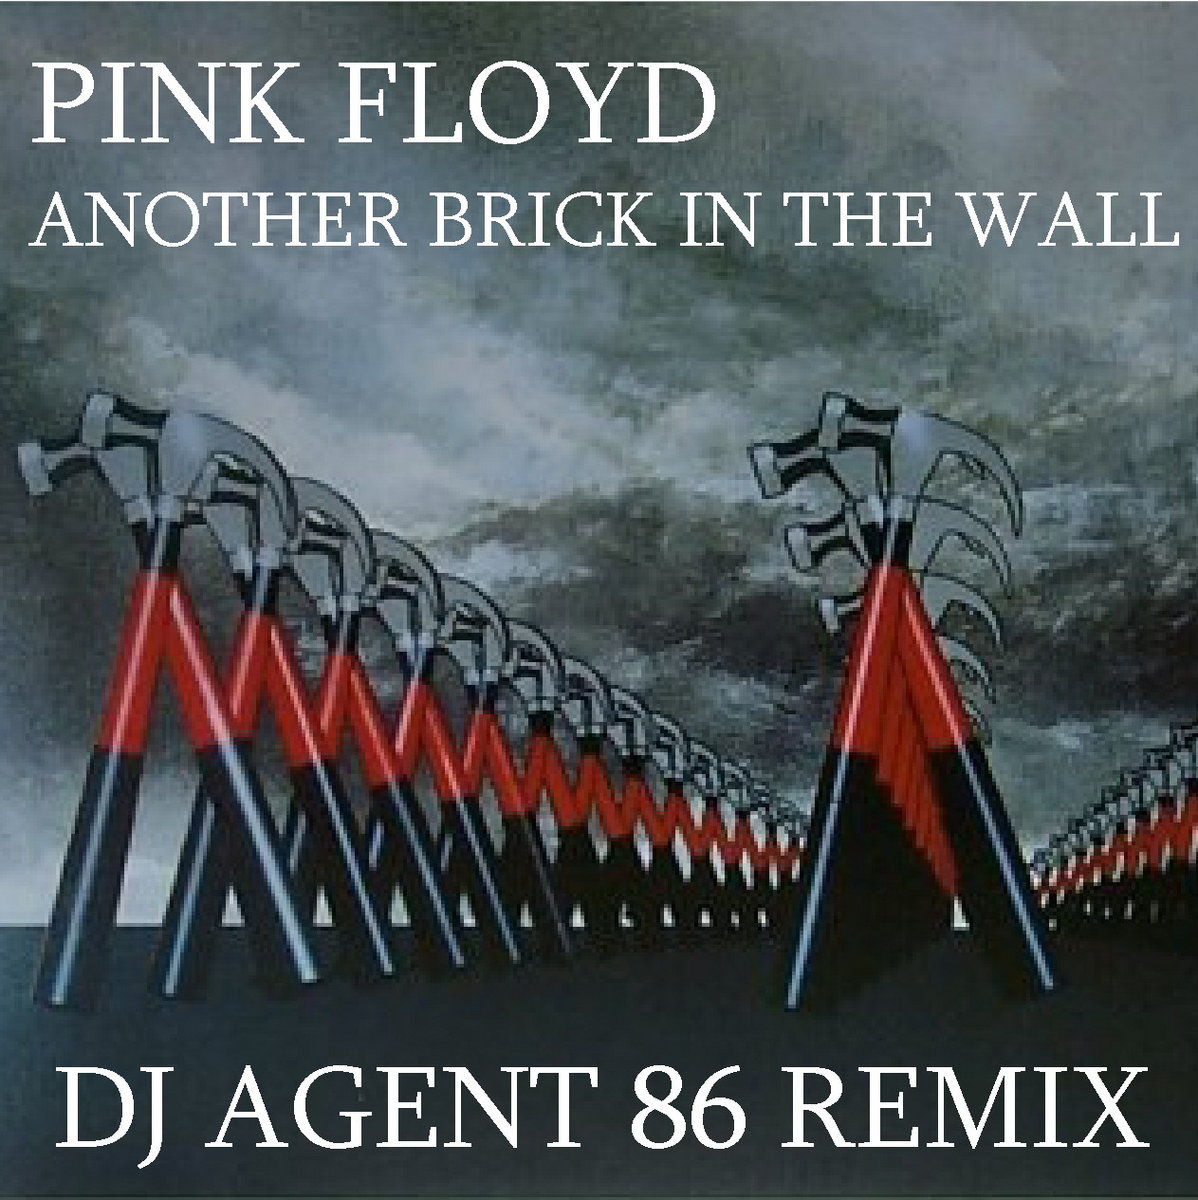 Pink floyd wall скачать альбом торрент mp3